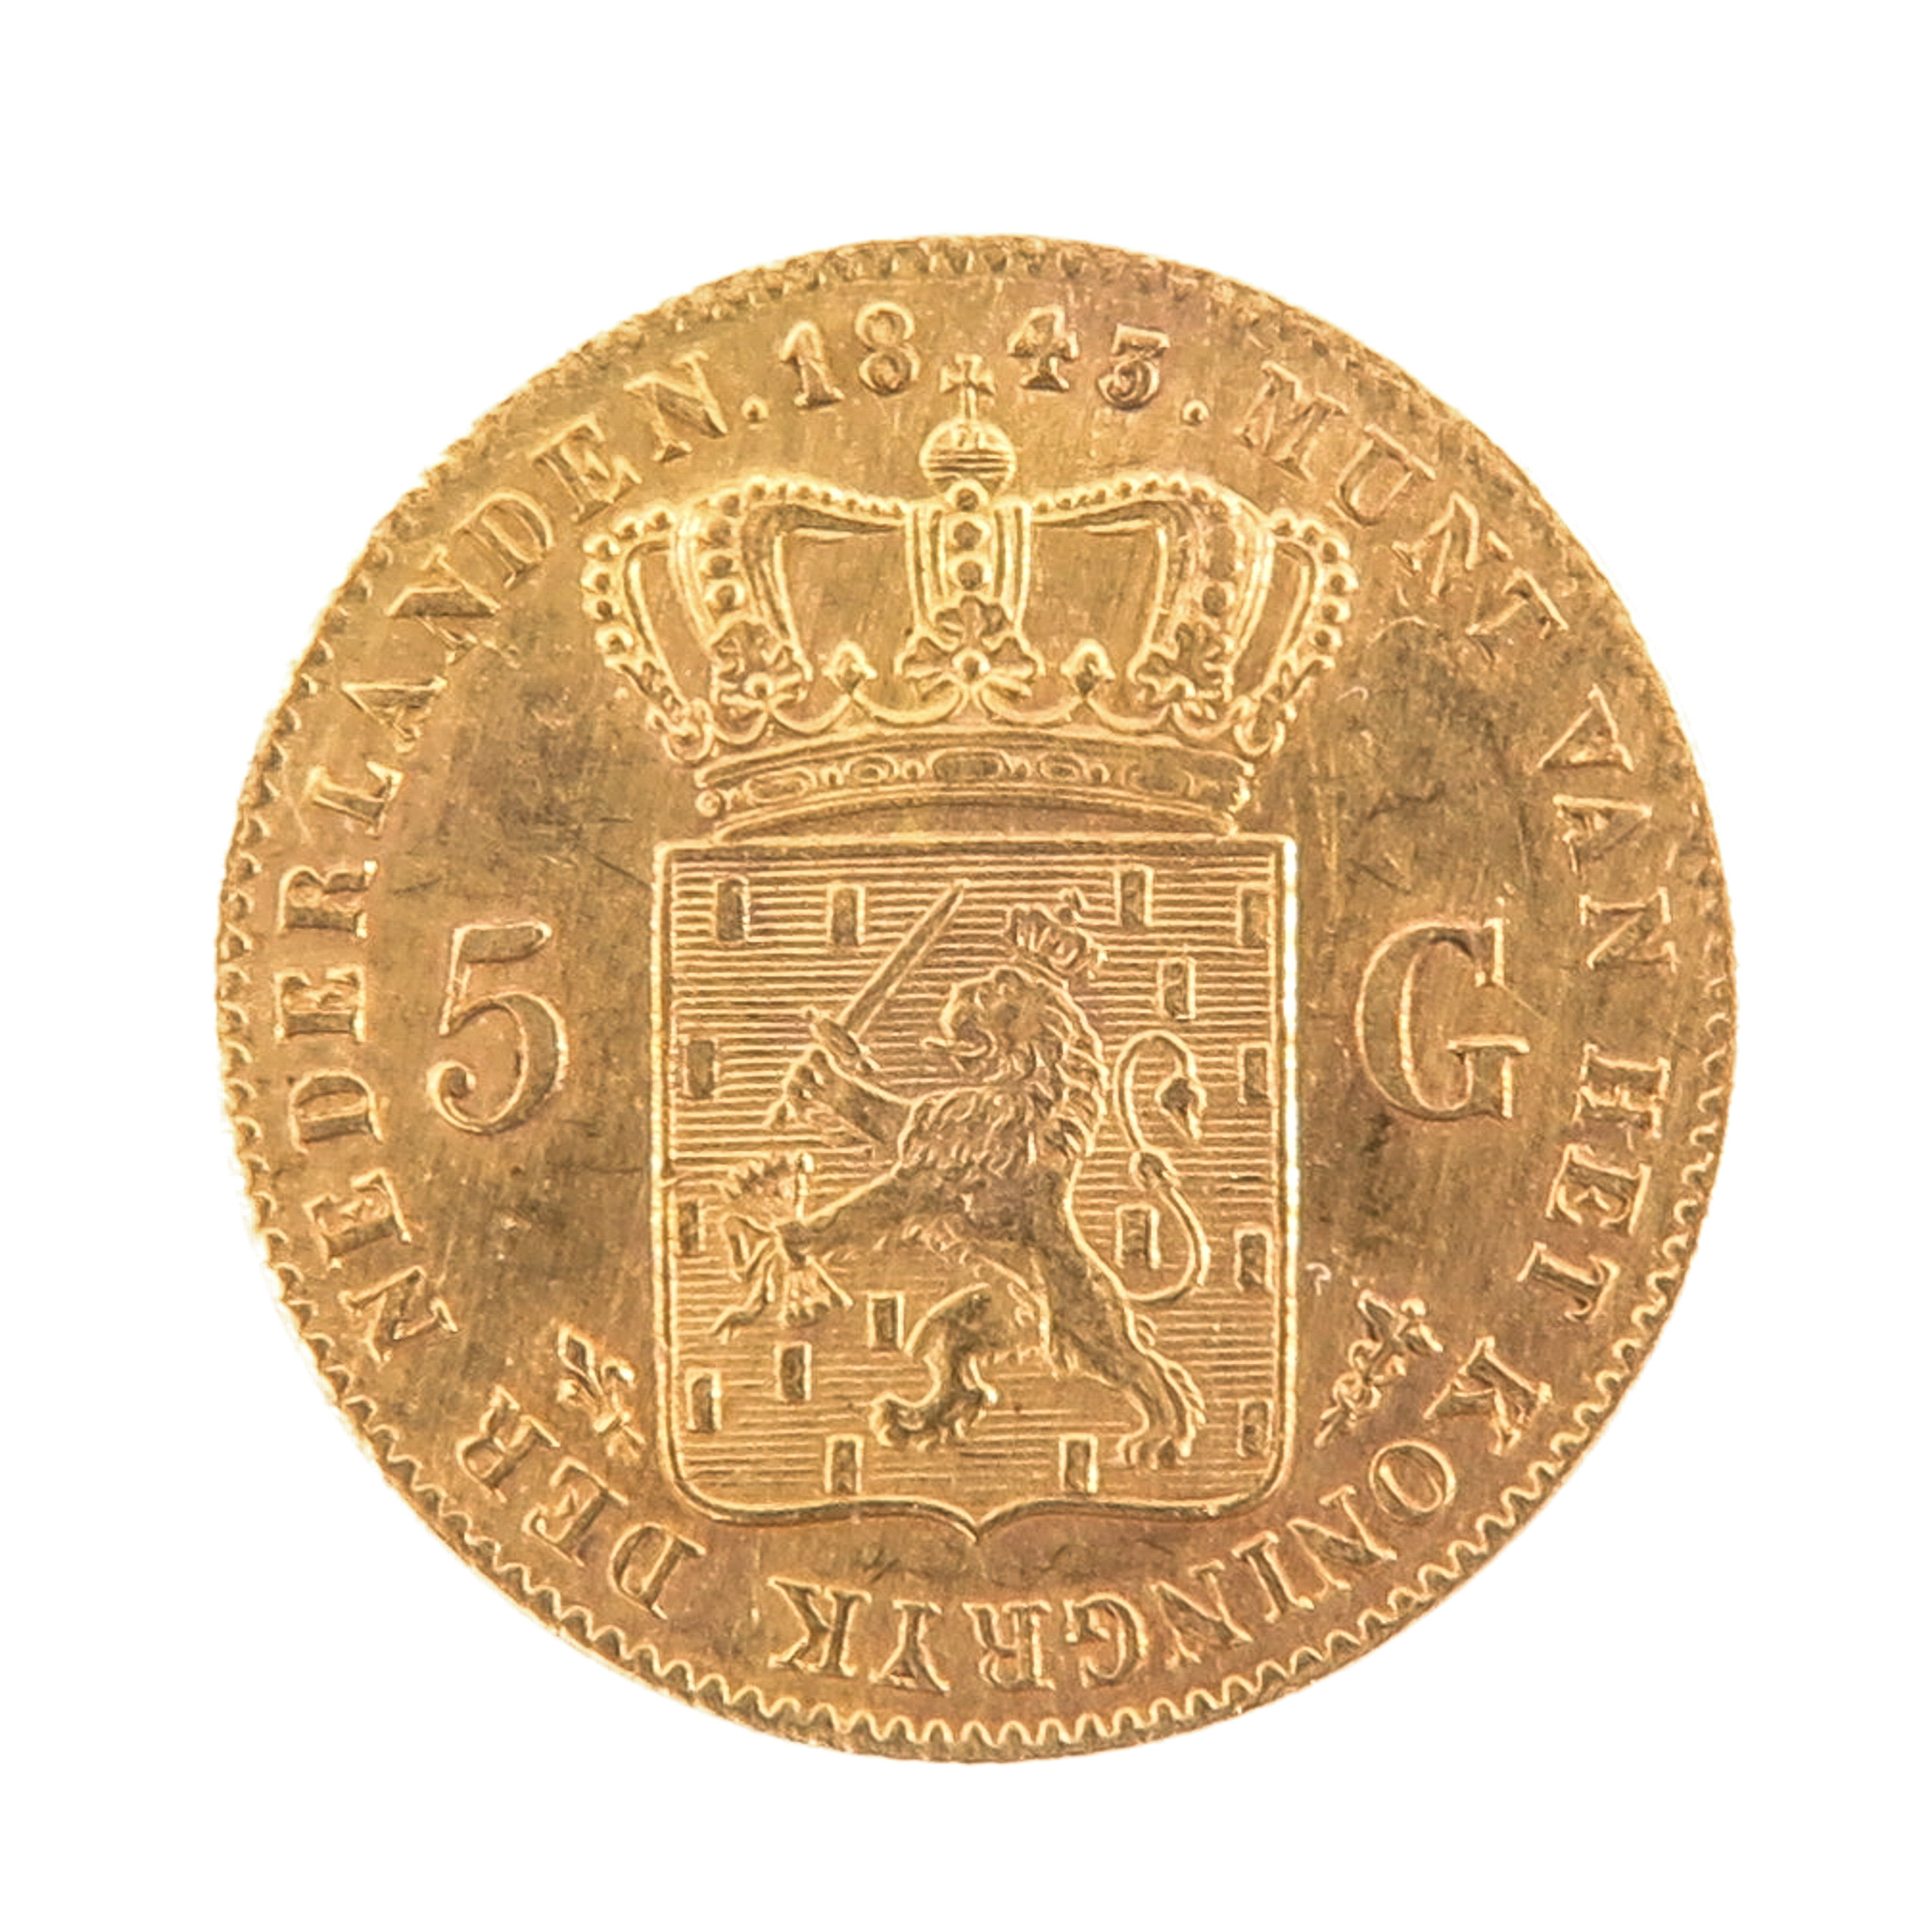 A 5 Guilder Gold Coin